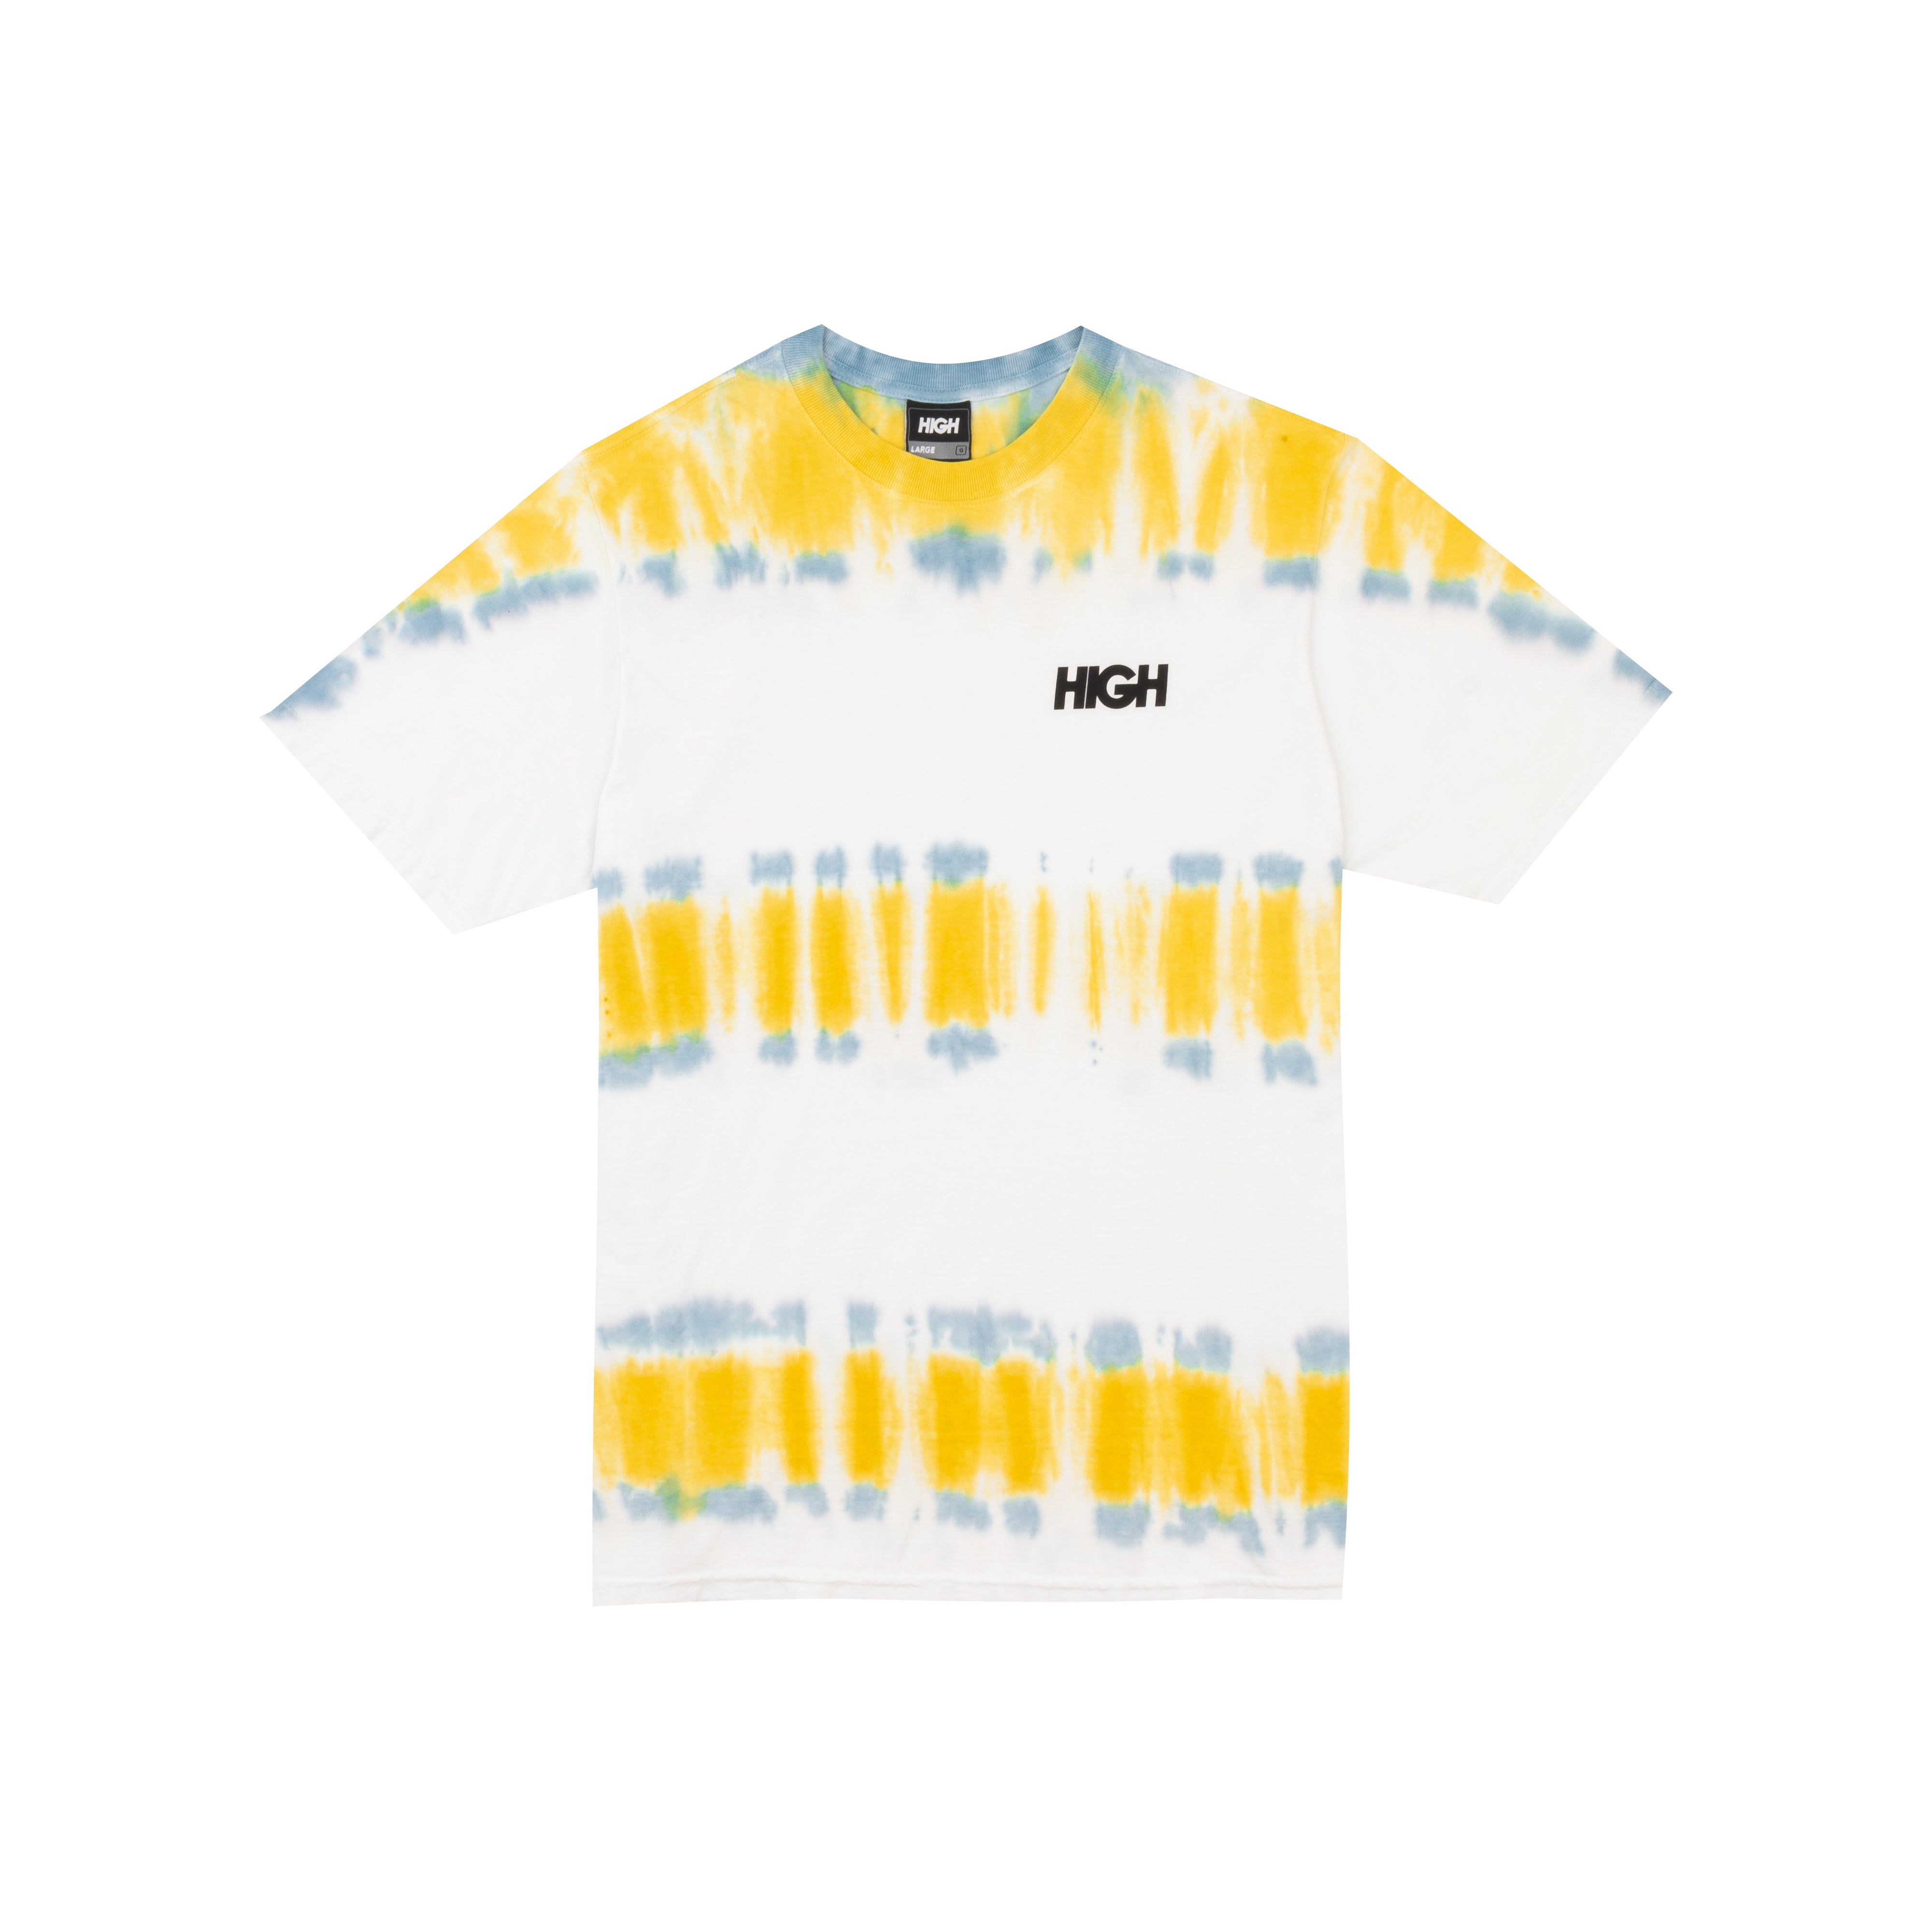 HIGH - Camiseta Kidz Dyed White